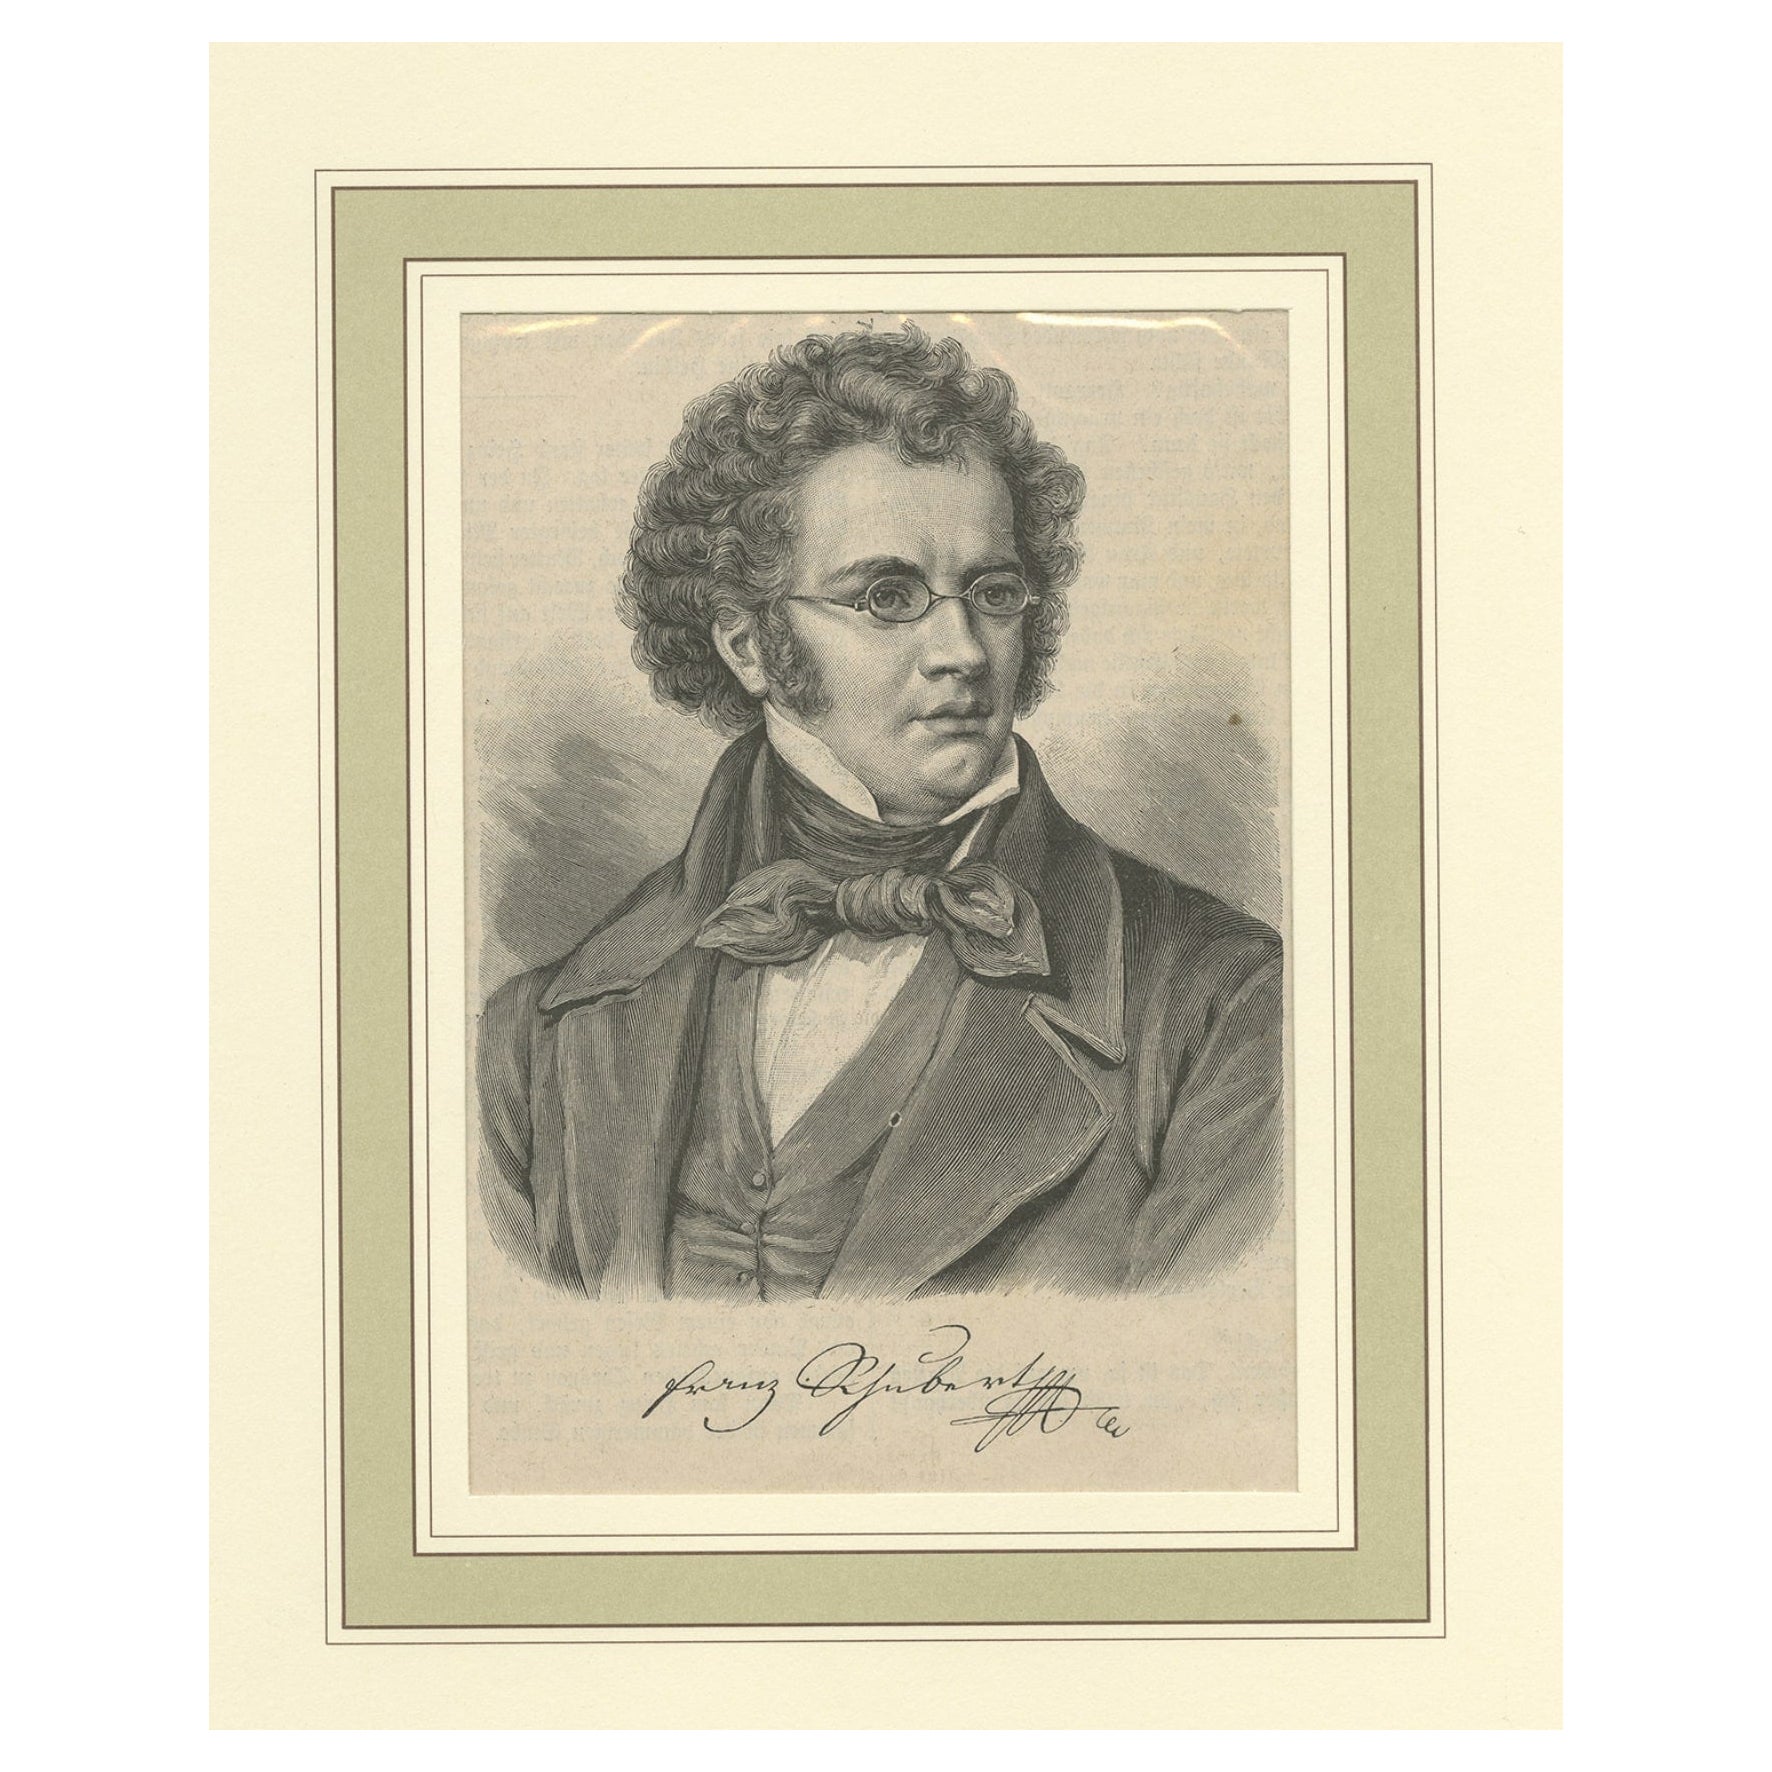 Original Old Print of Austrian Composer Franz Peter Schubert, 1897